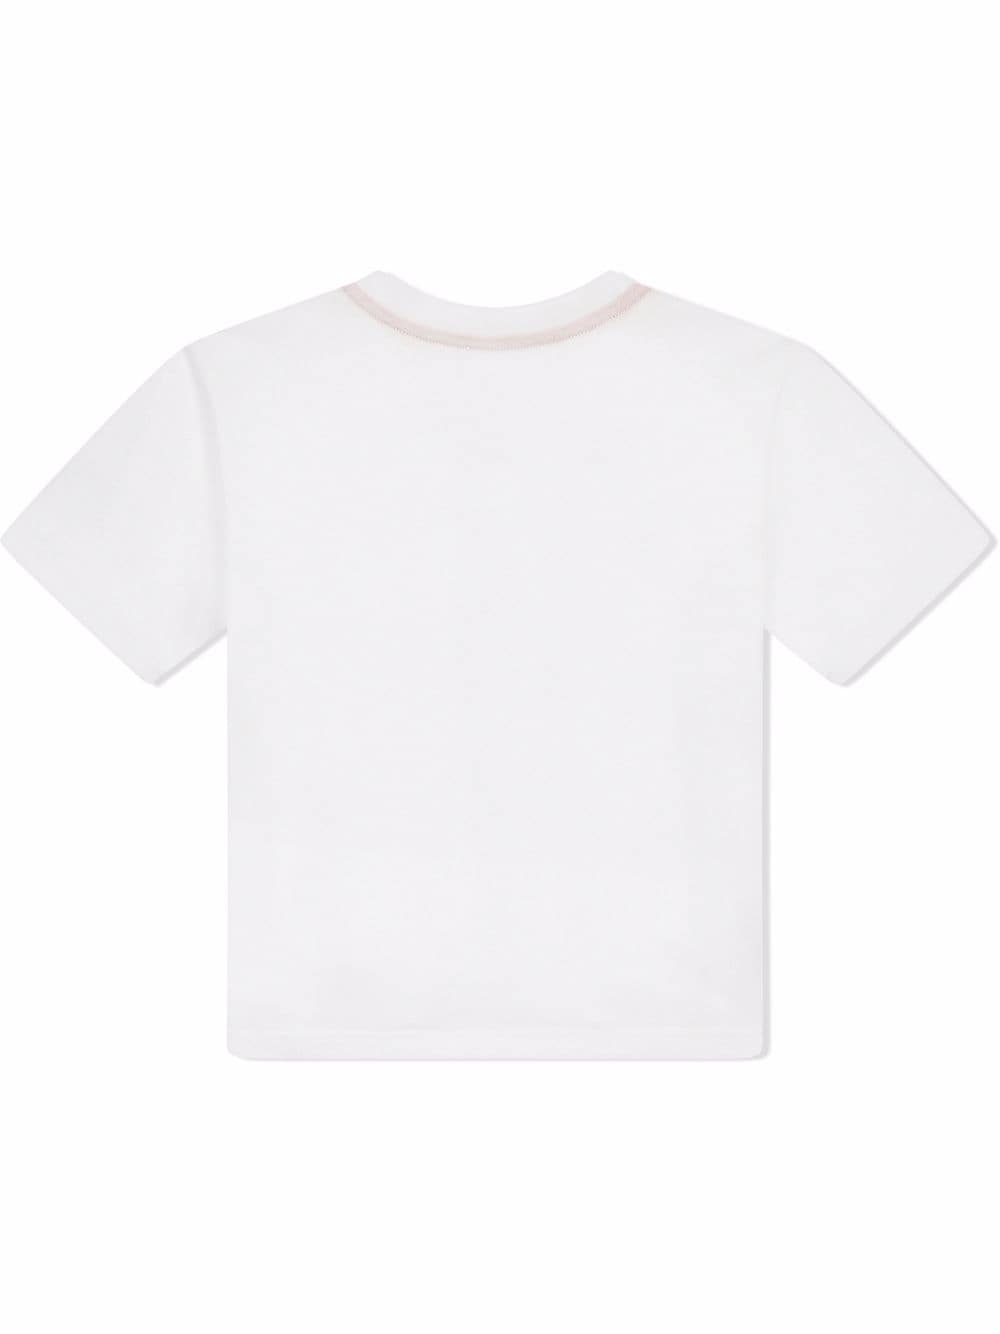 DOLCE & GABBANA KIDS DG-logo Print T-shirt White - MAISONDEFASHION.COM